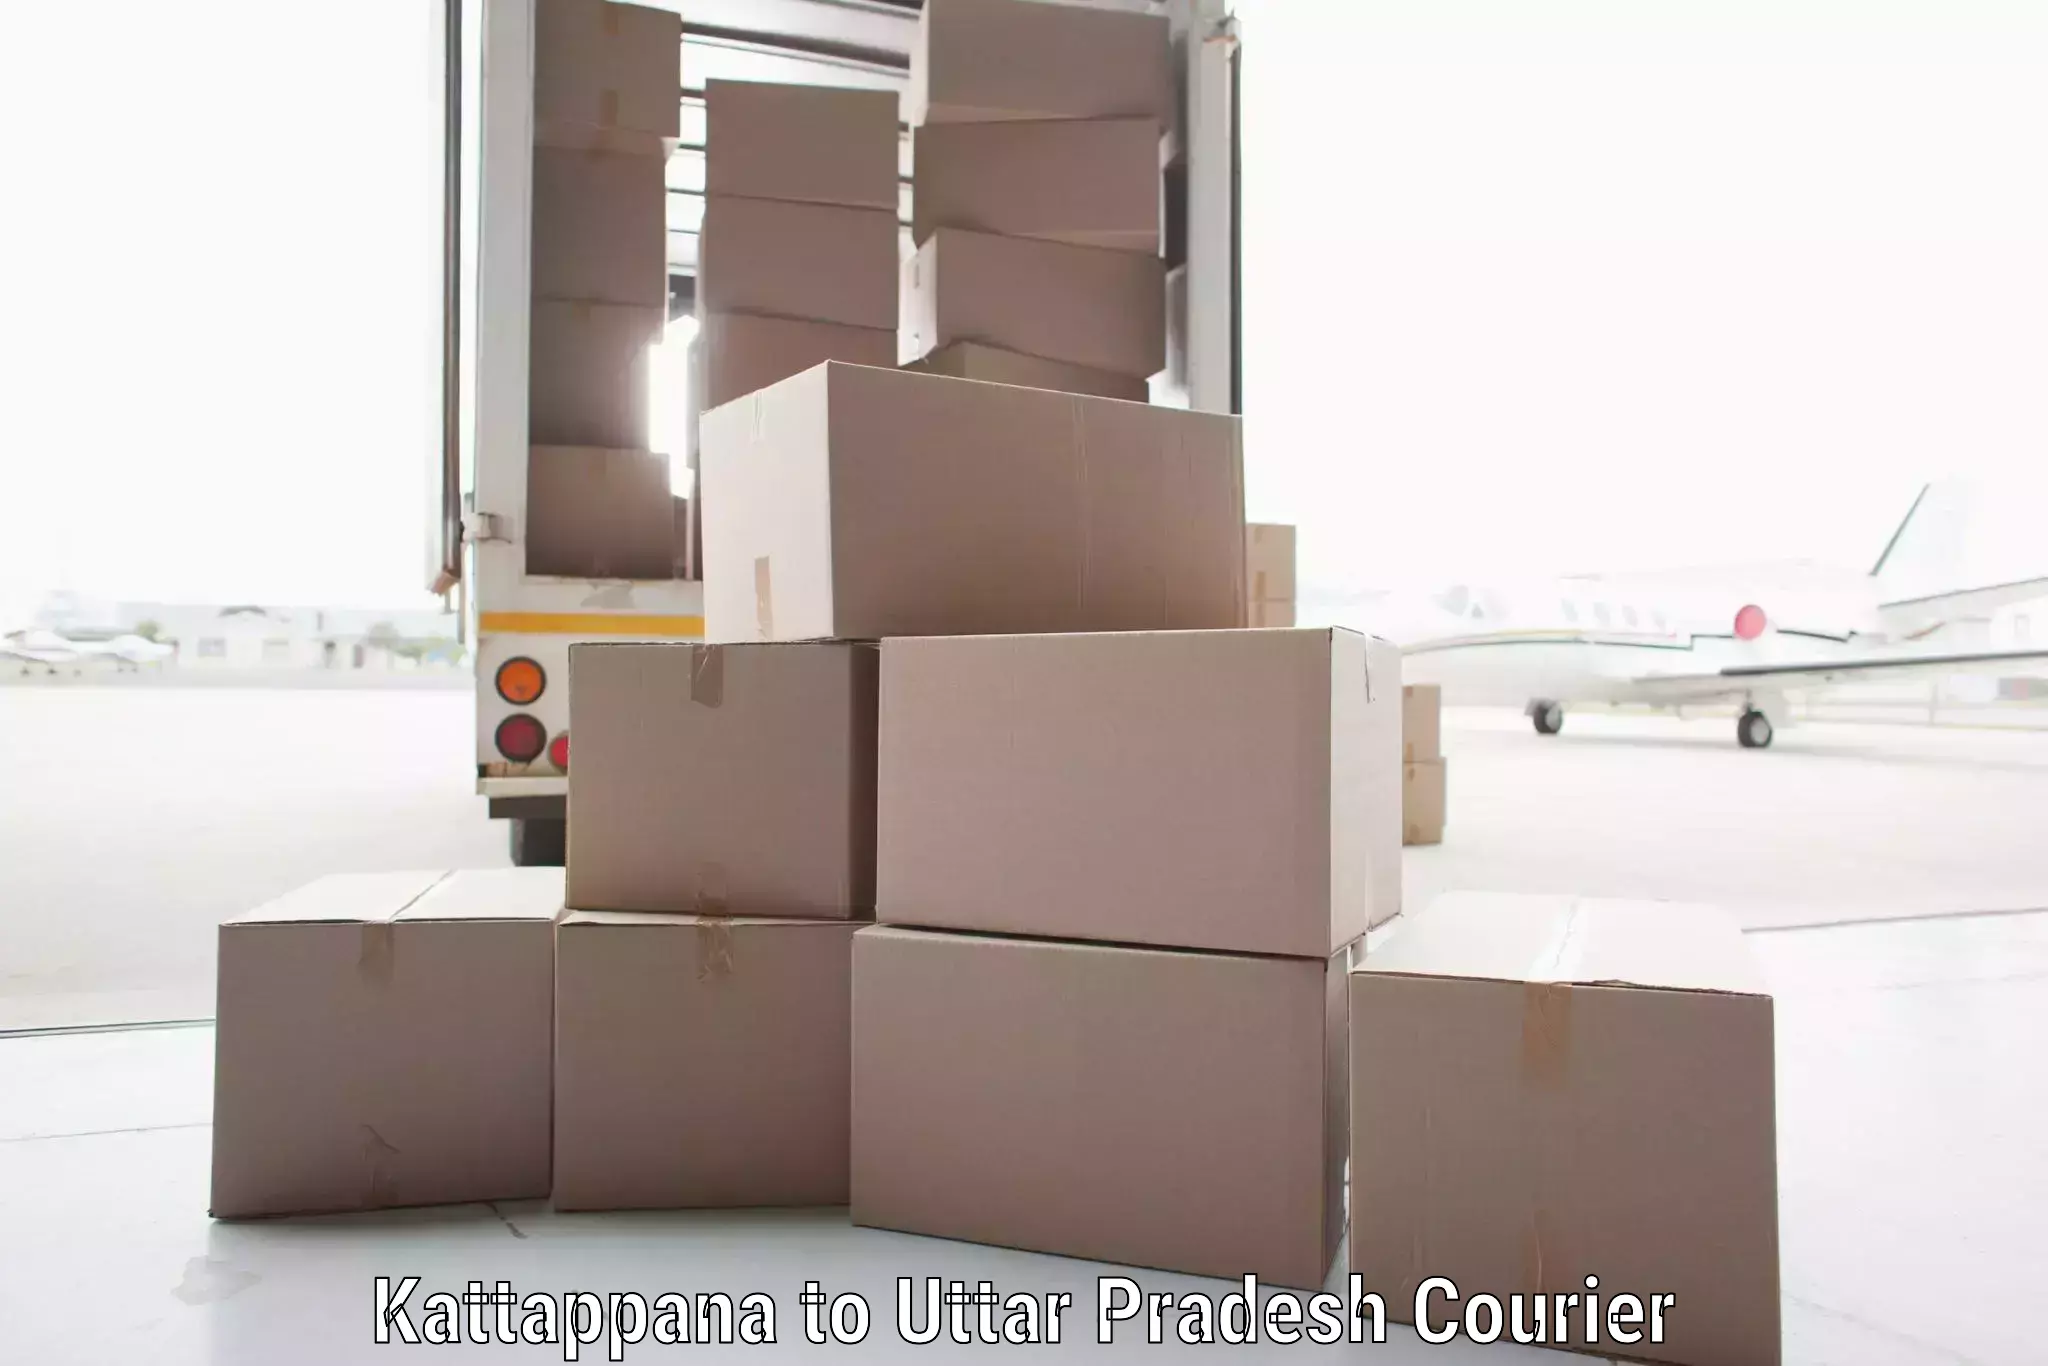 High-capacity shipping options Kattappana to Tanda